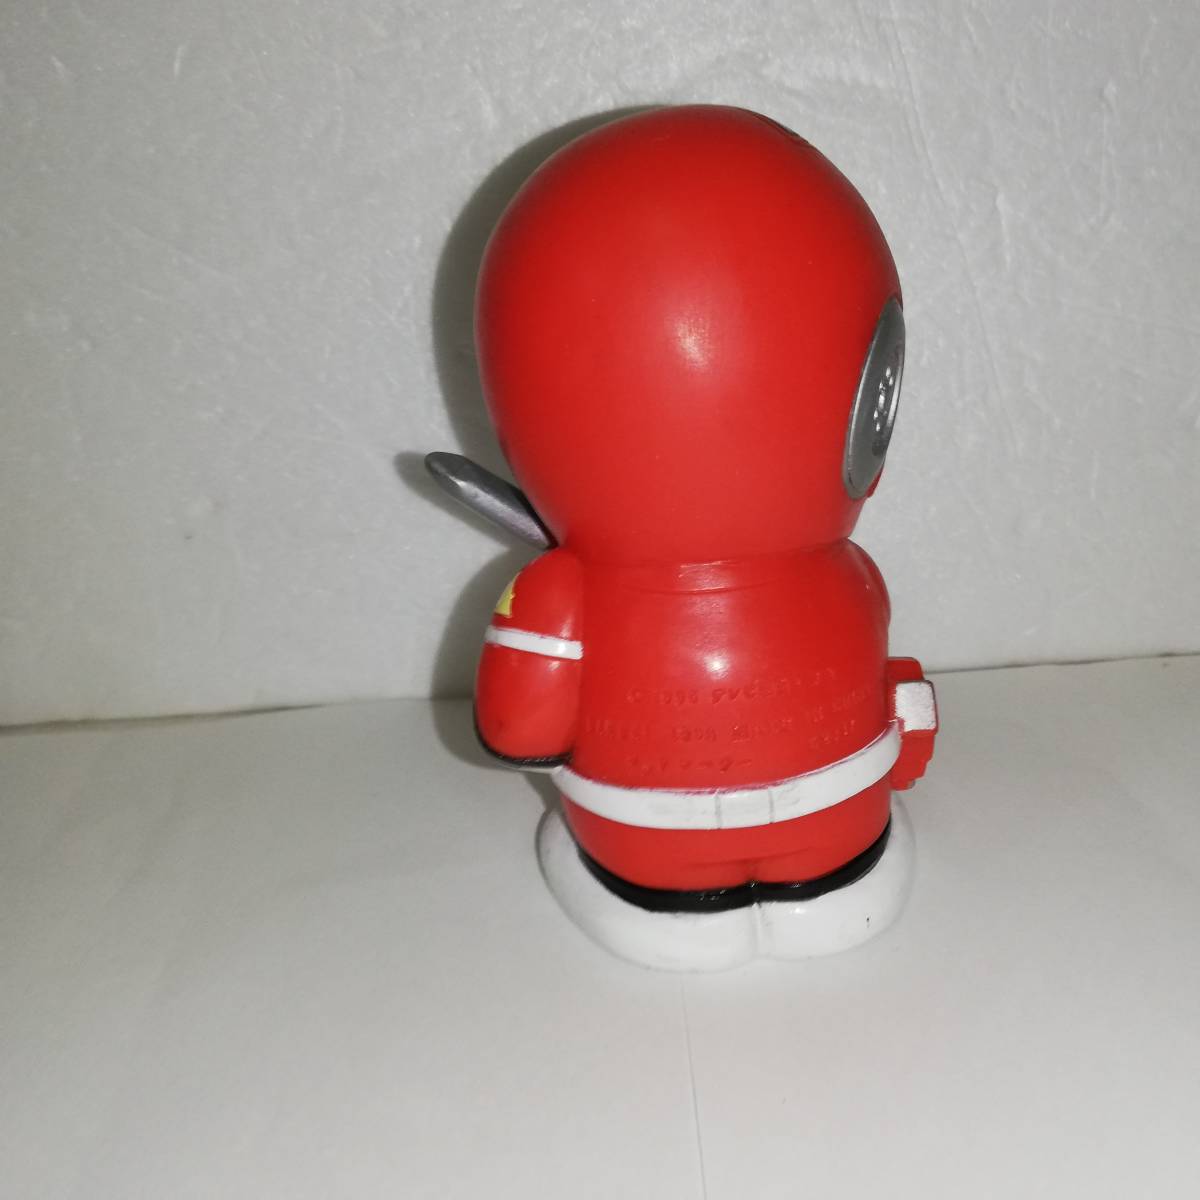 * машина Ranger красный Racer 1 вид . качество кукла длина примерный 11 см ранг б/у товар *1996 год Bandai производства 